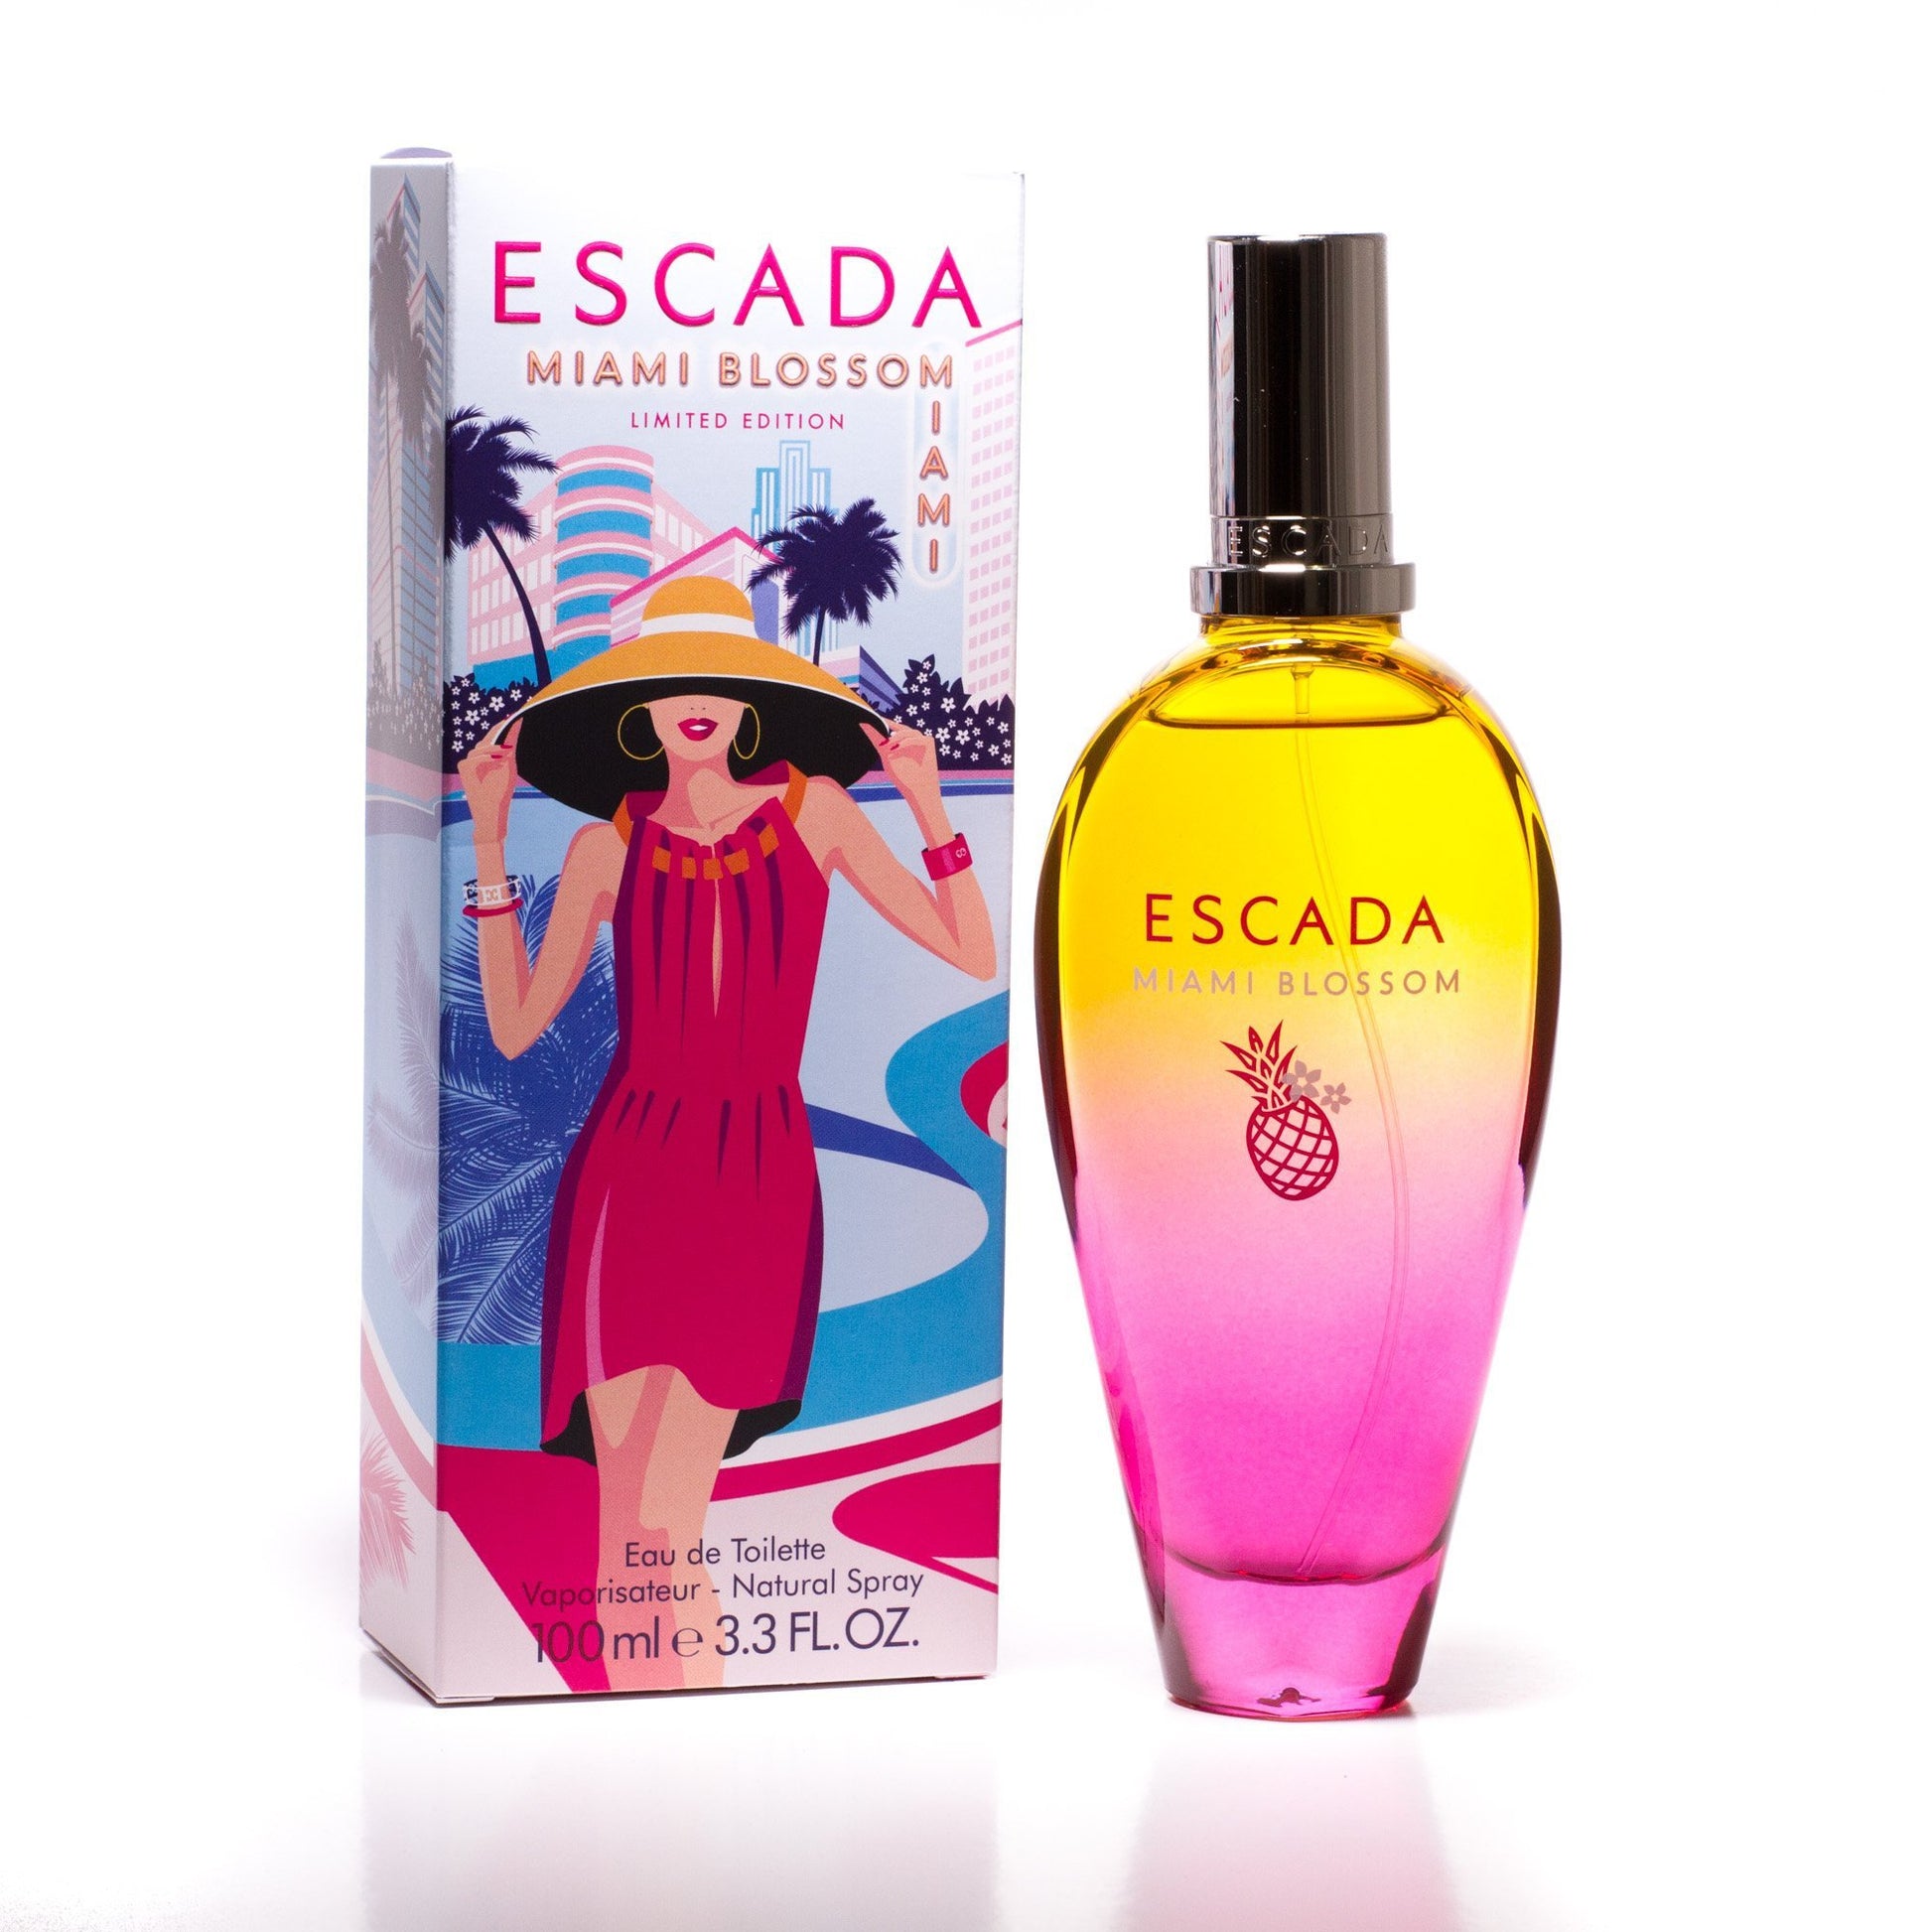 Miami Blossom Eau de Toilette Spray for Women by Escada 3.3 oz. Click to open in modal